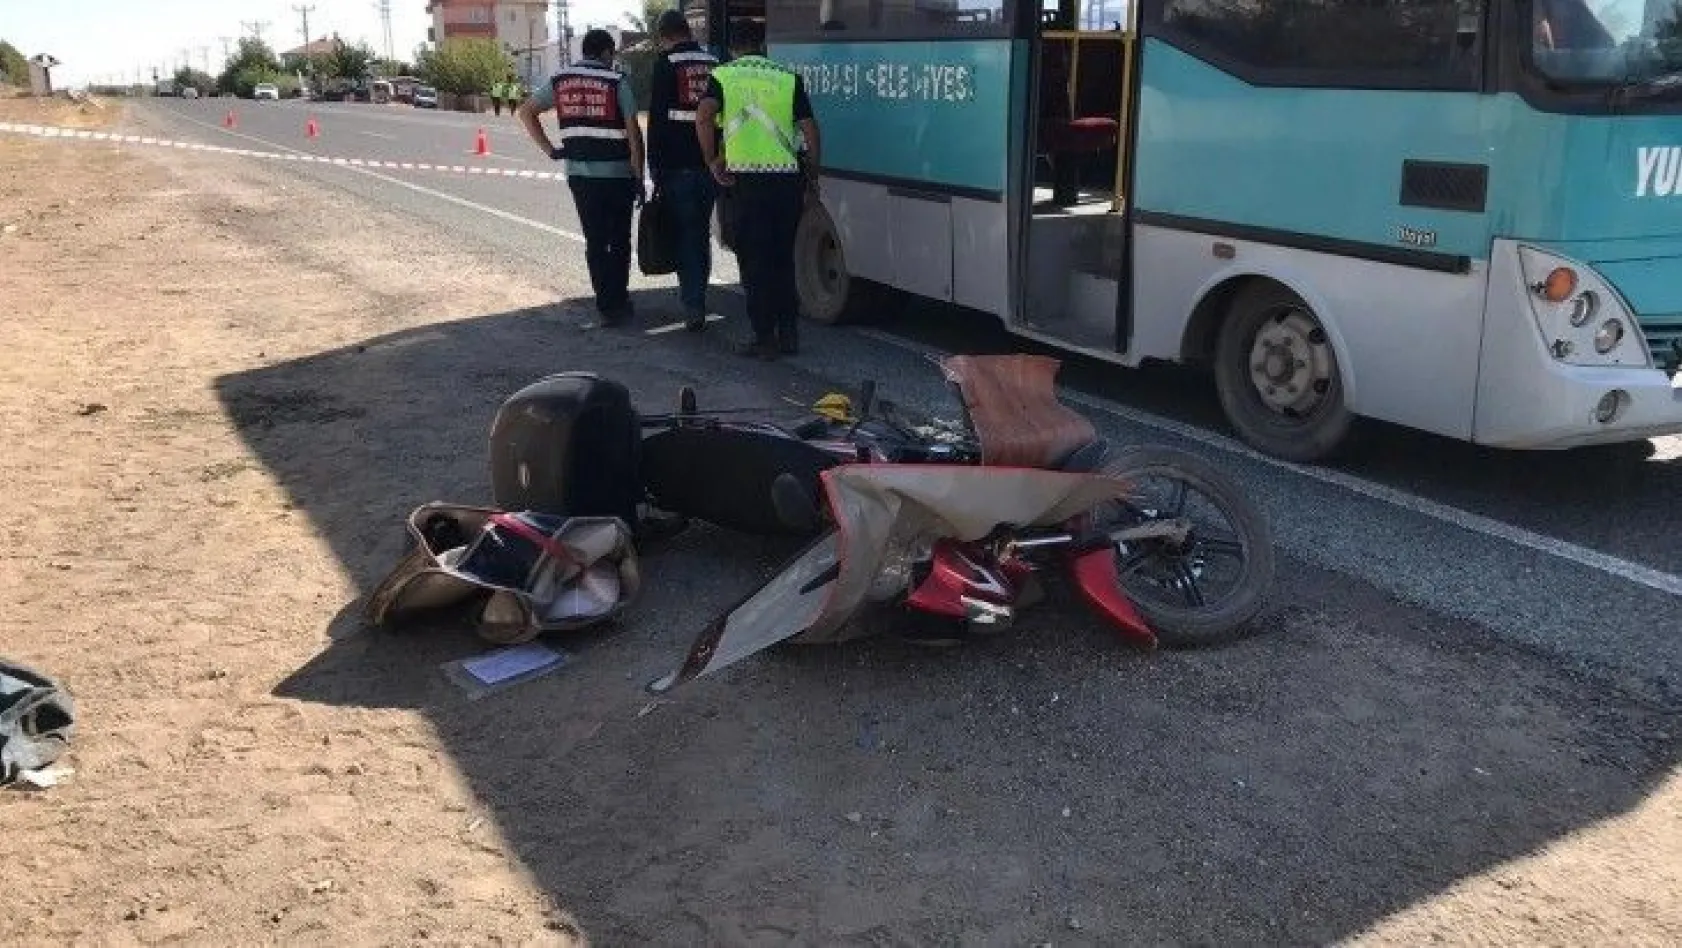 Motosiklet, otobüse çarptı: 1 ağır yaralı